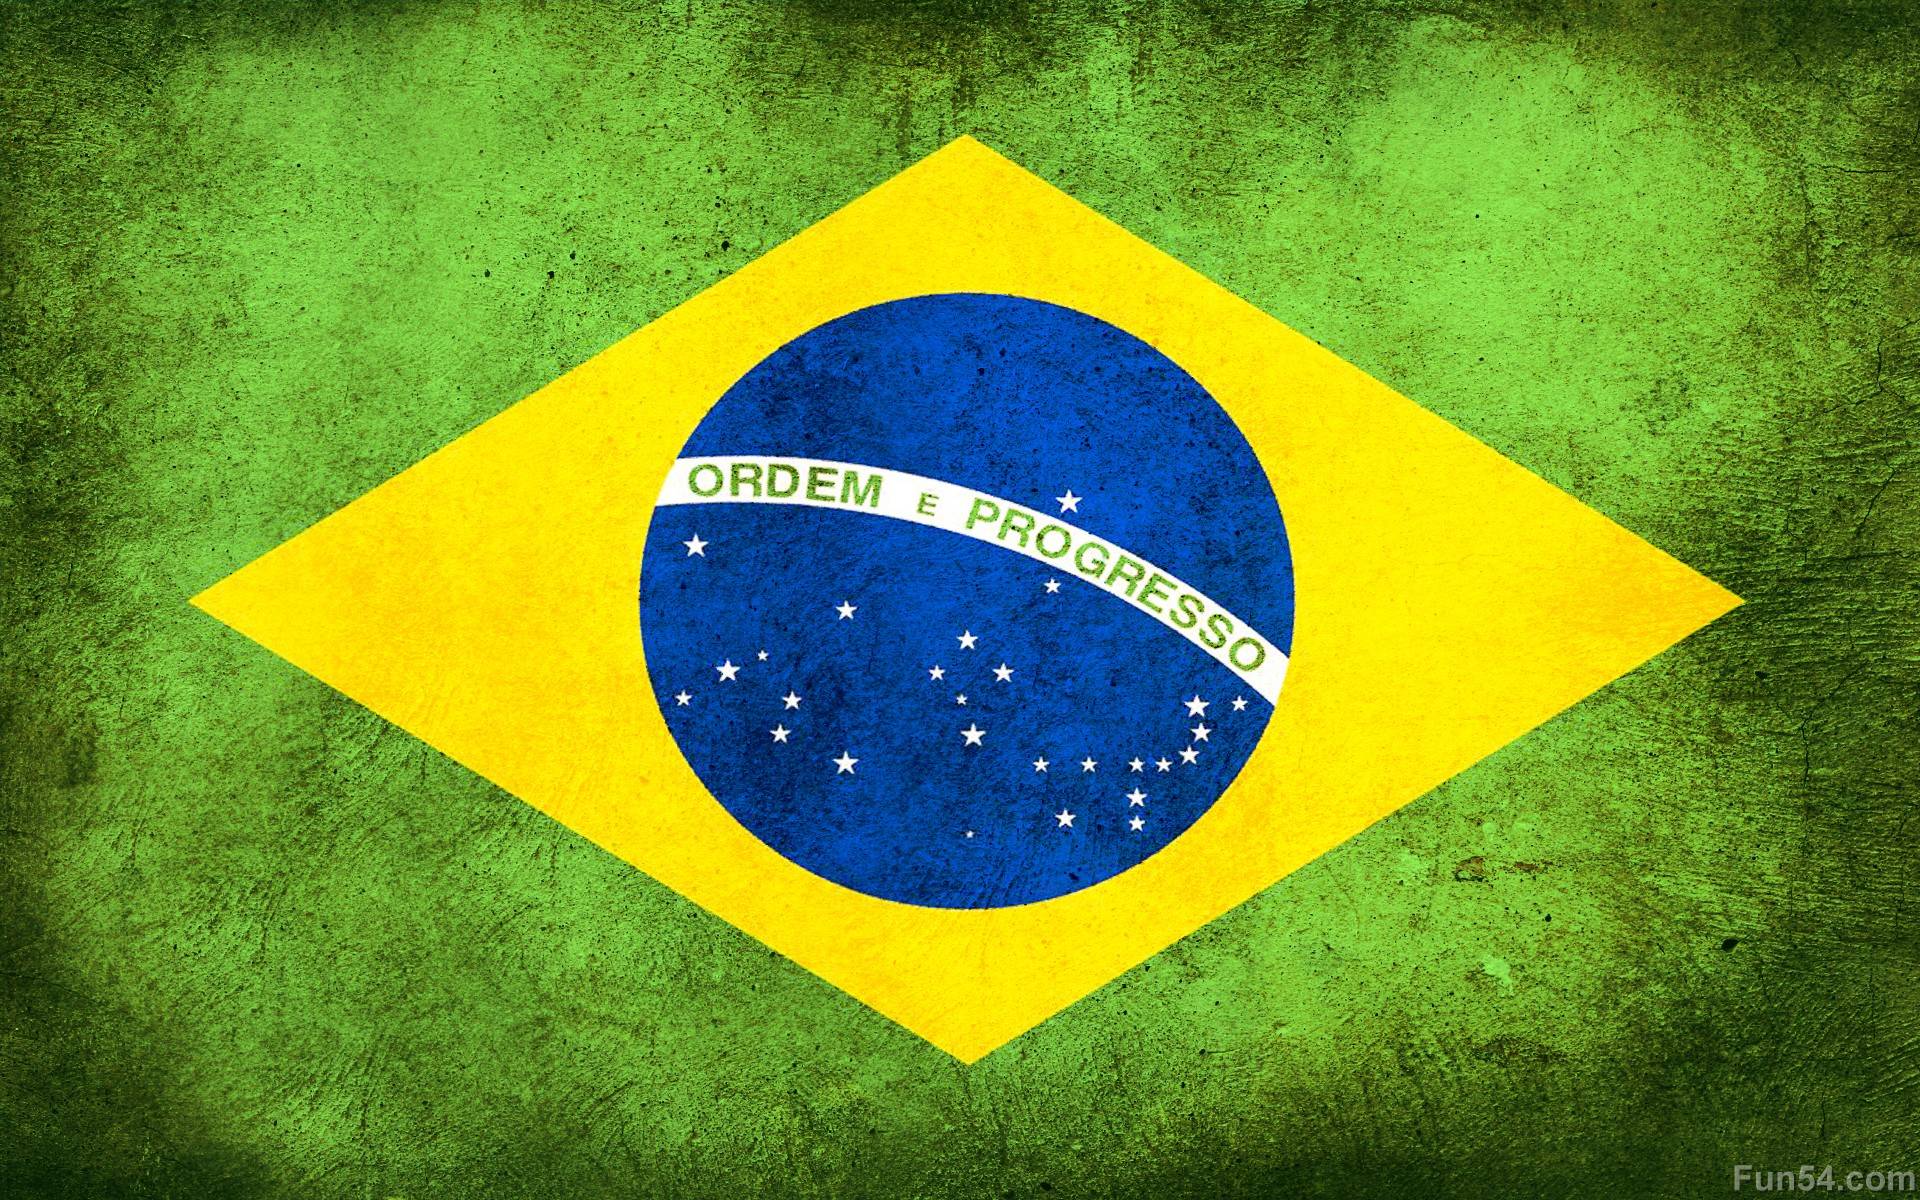 Brasil, brazil, brazil, football, soccer, brasil national team, brazil  national team, HD phone wallpaper | Peakpx